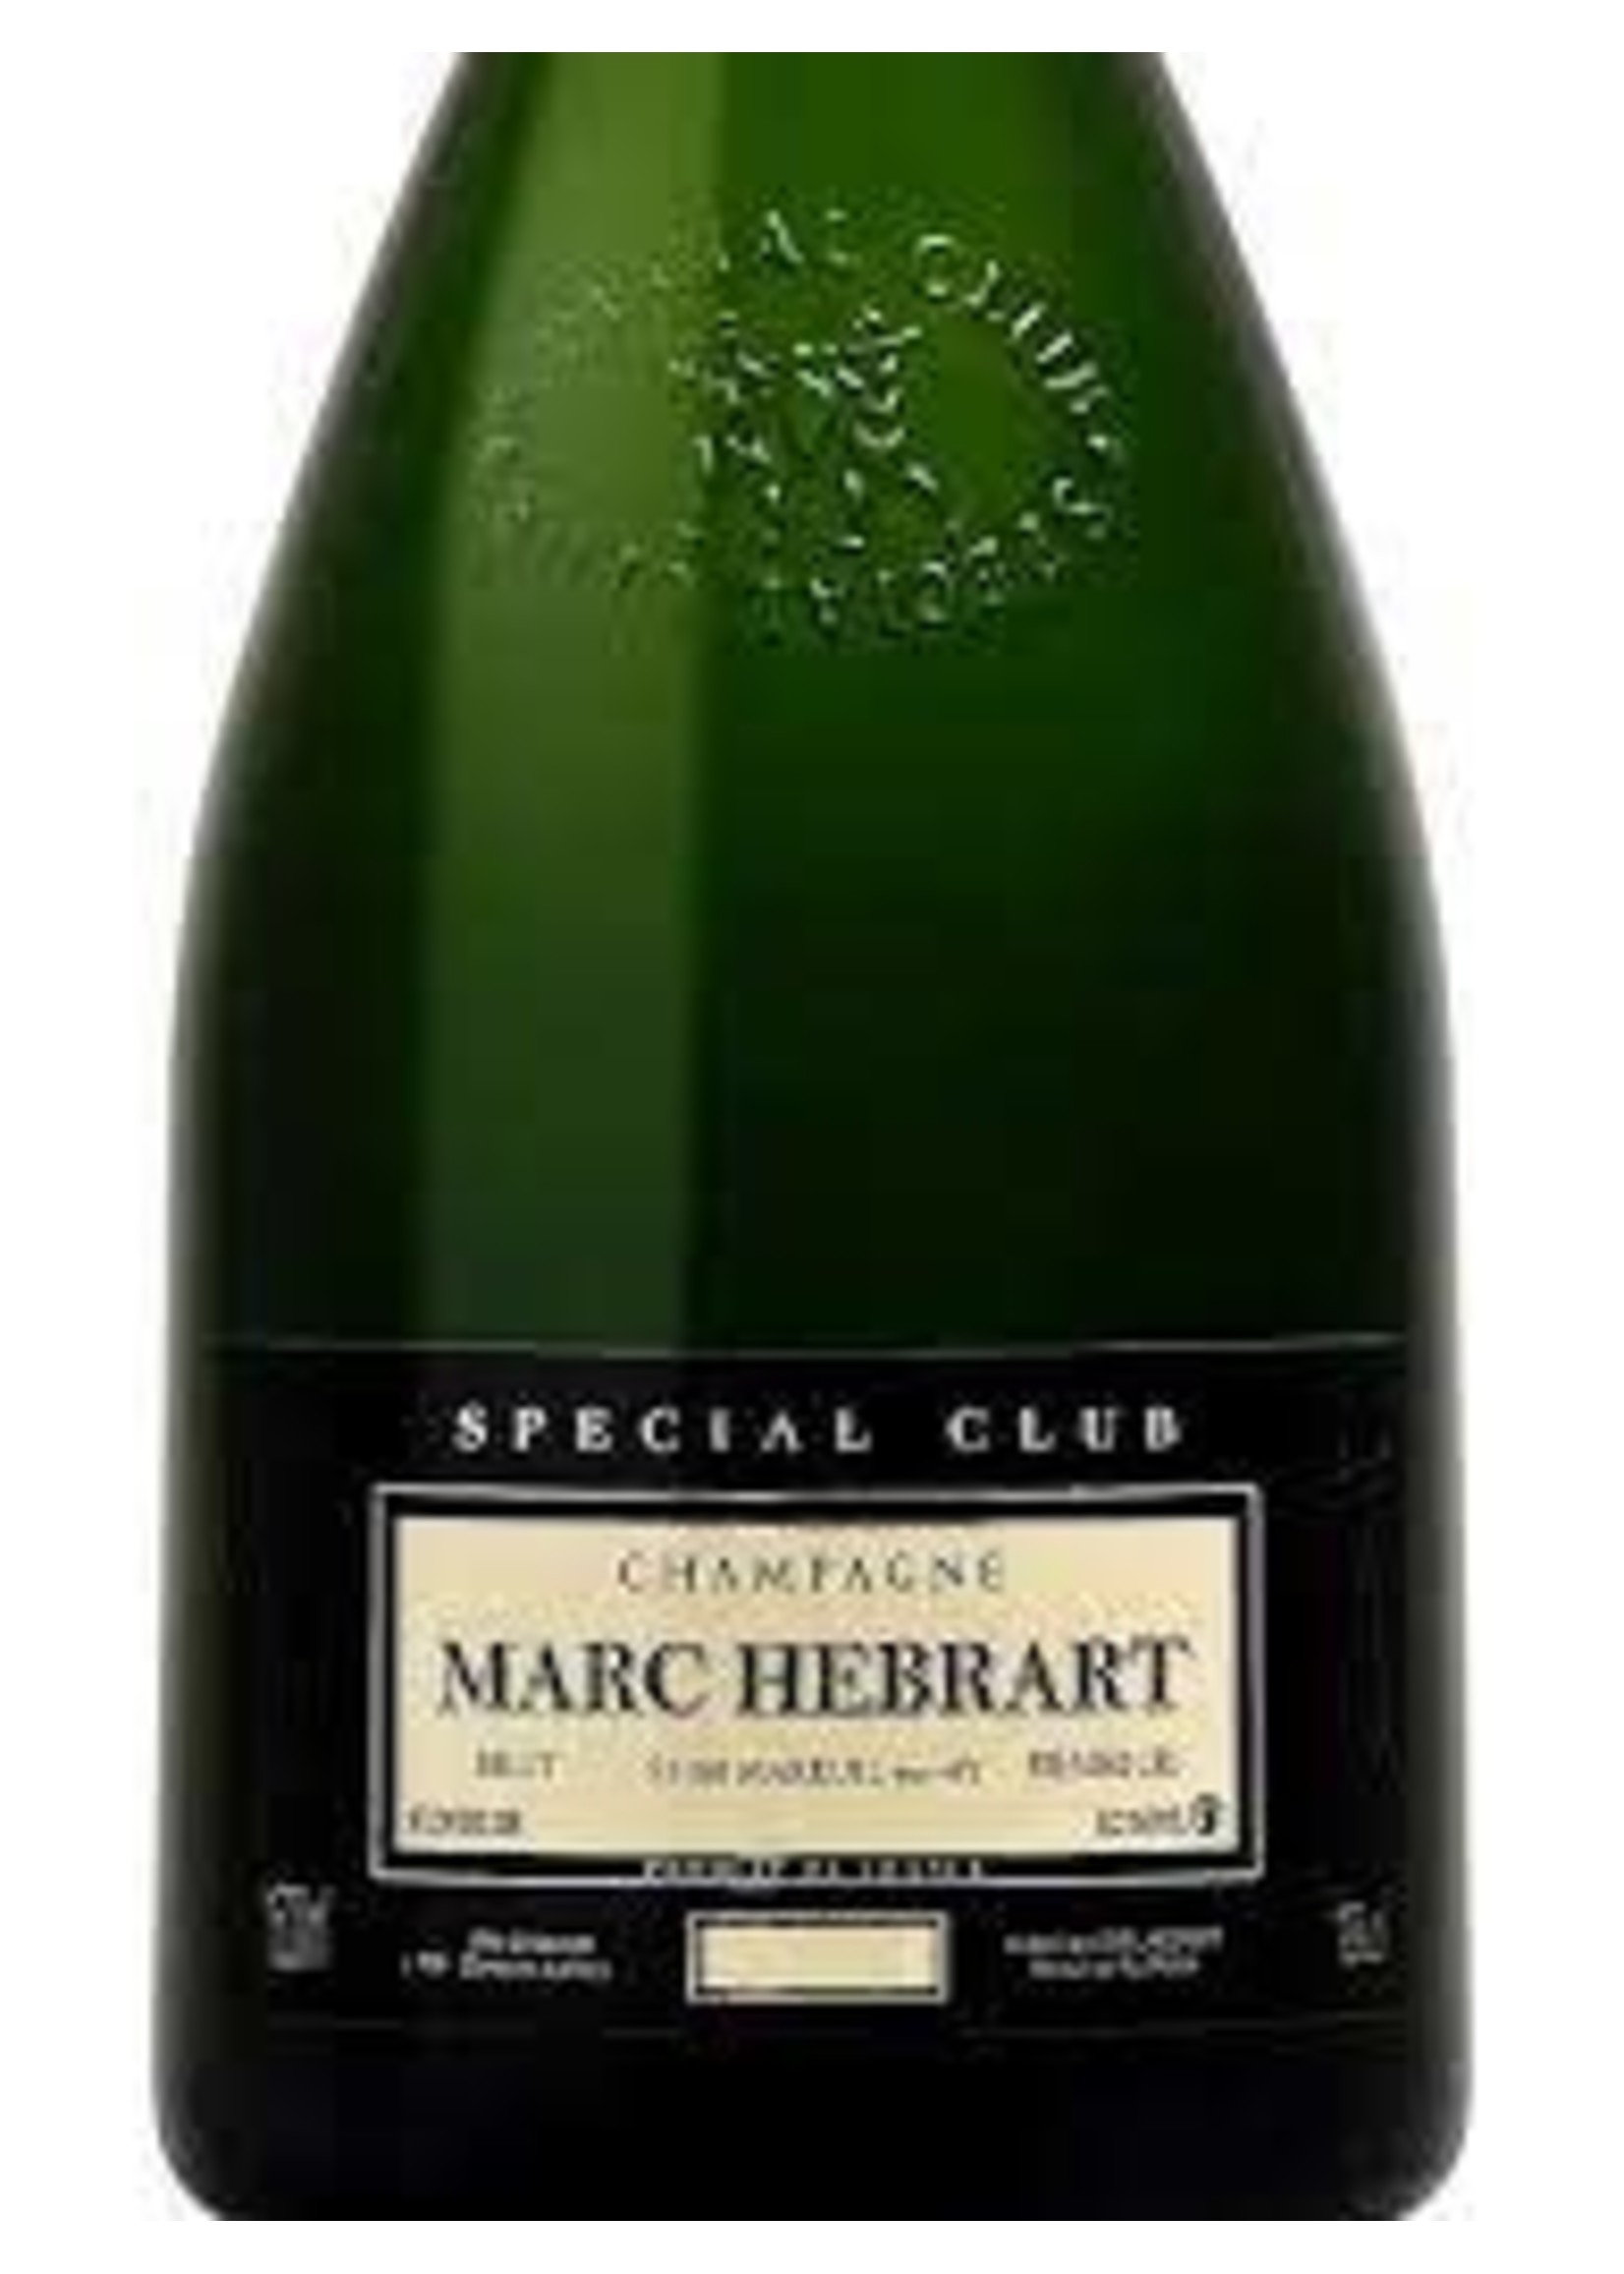 Marc Hebrart 2017 Champagne Special Club 1er Cru Brut 1.5L